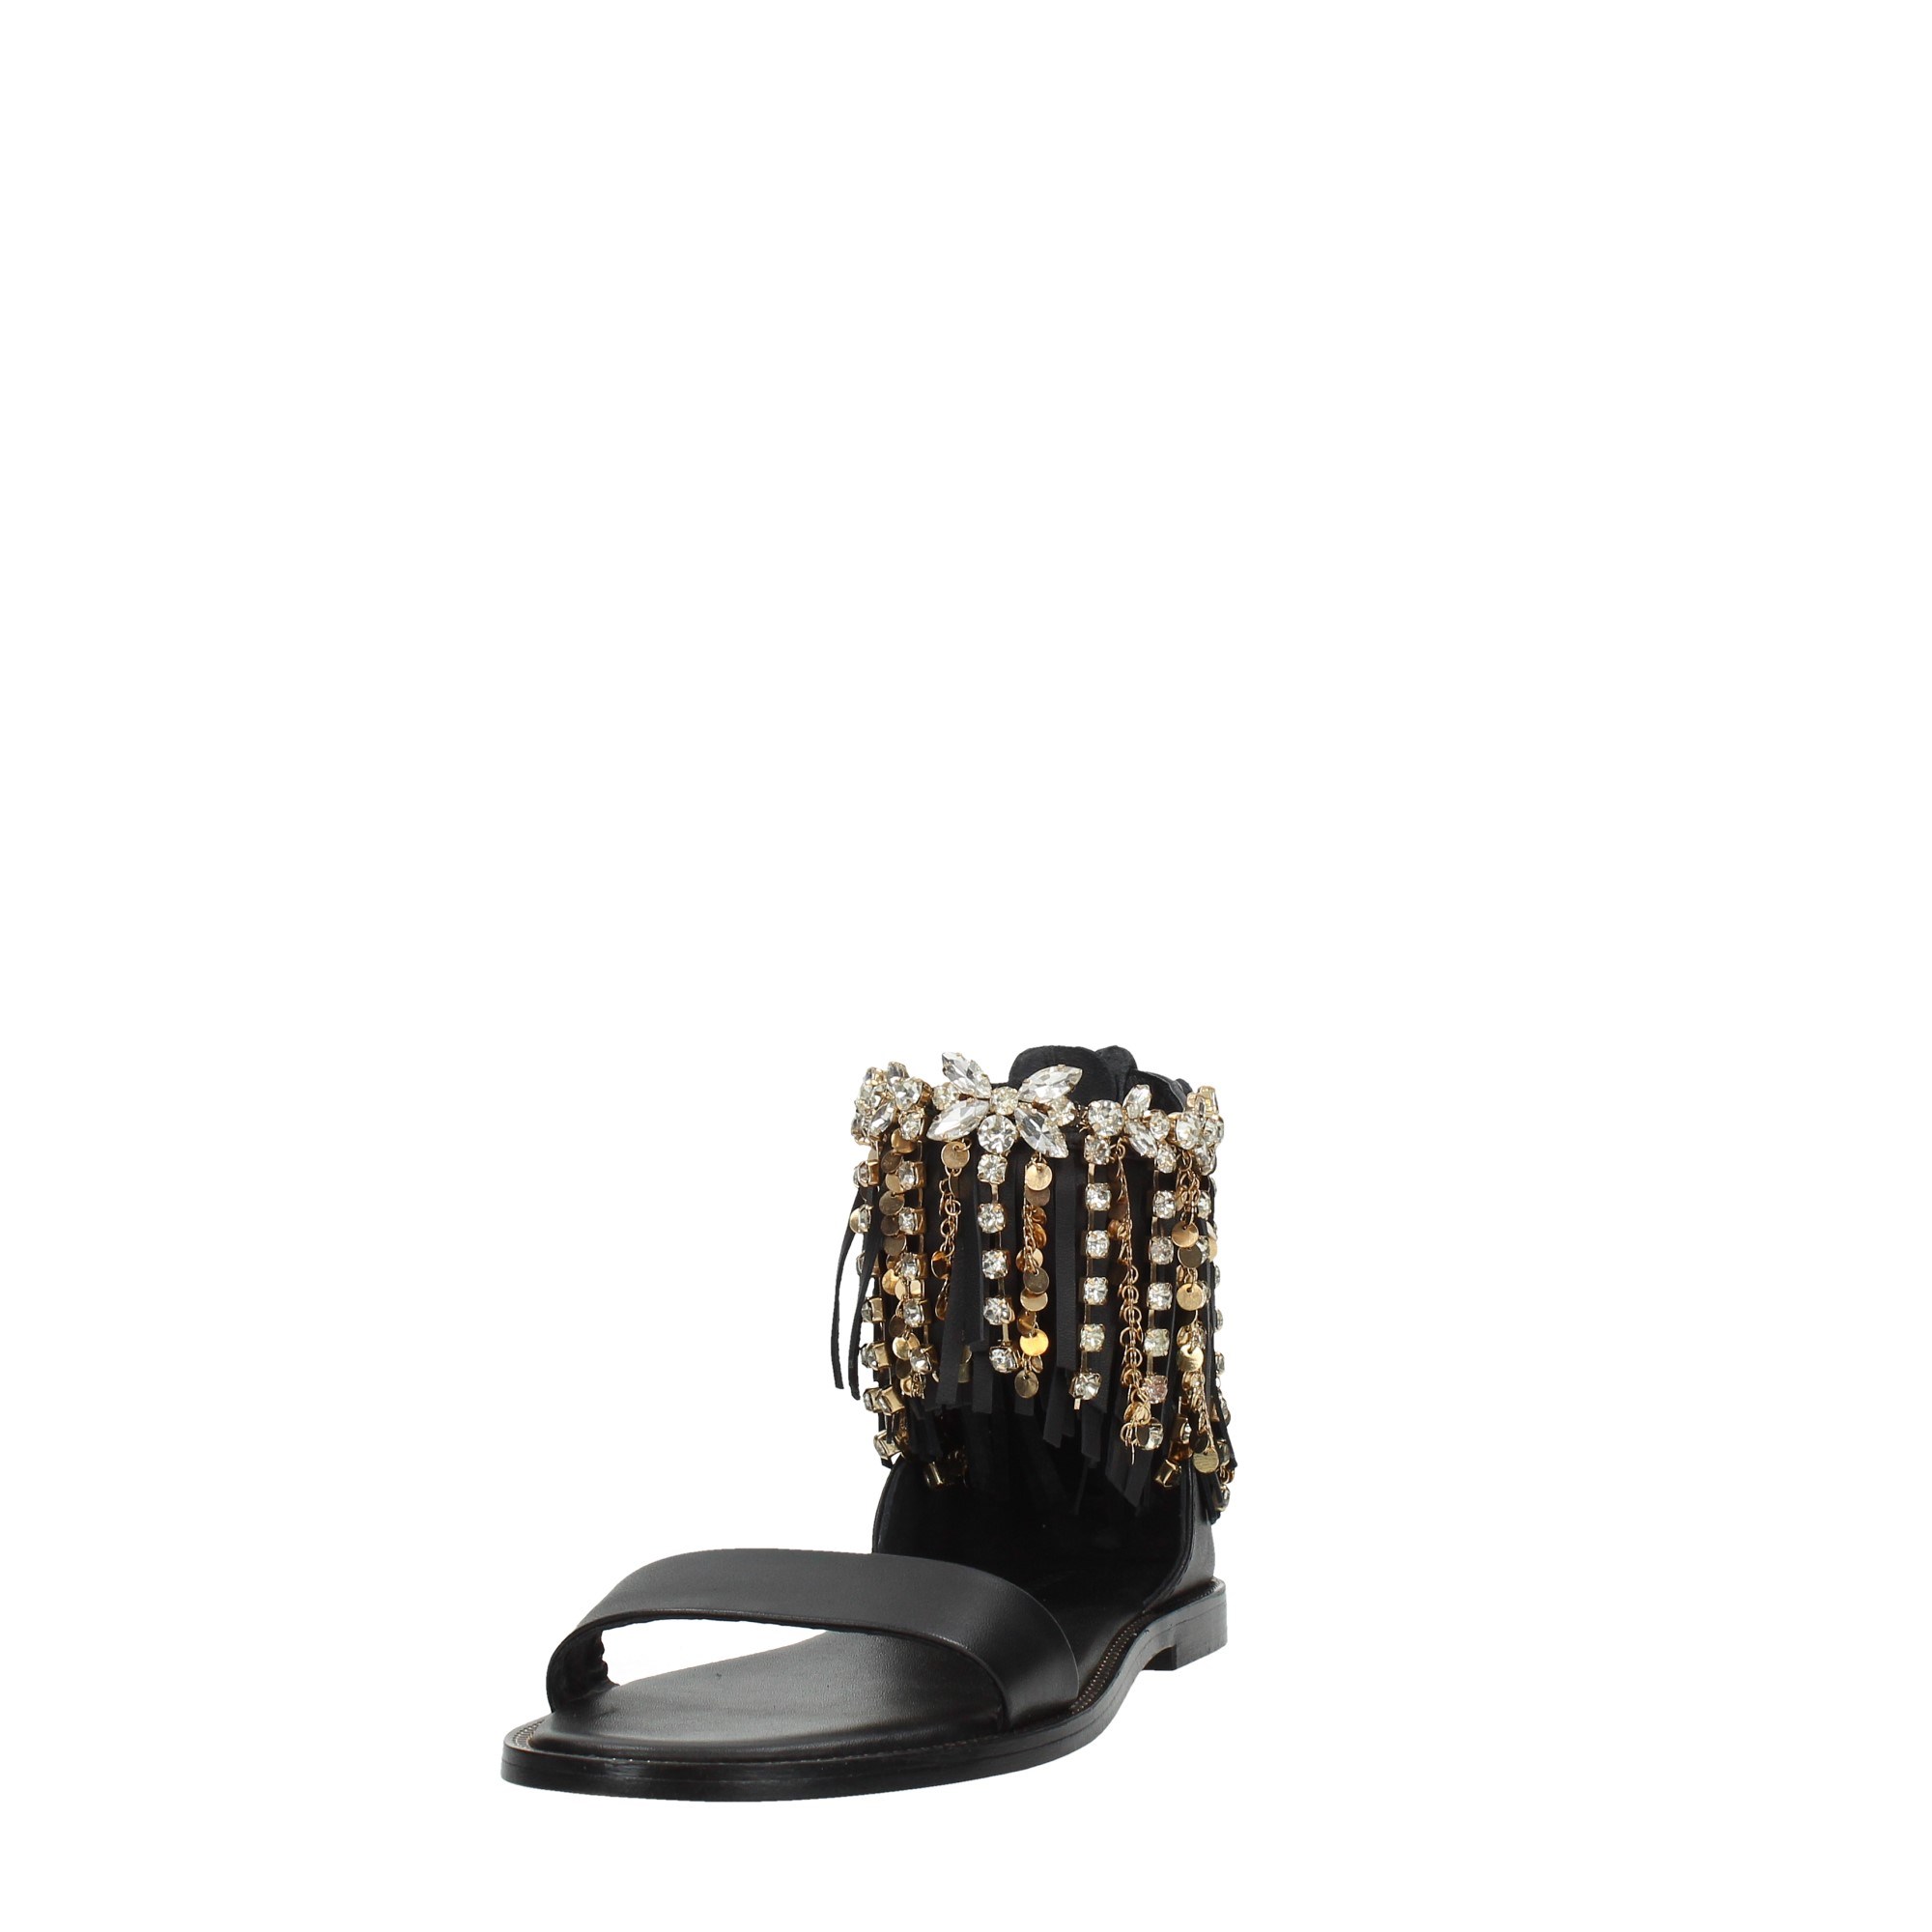 Emanuelle Vee Shoes Women Sandals 421M-405-33